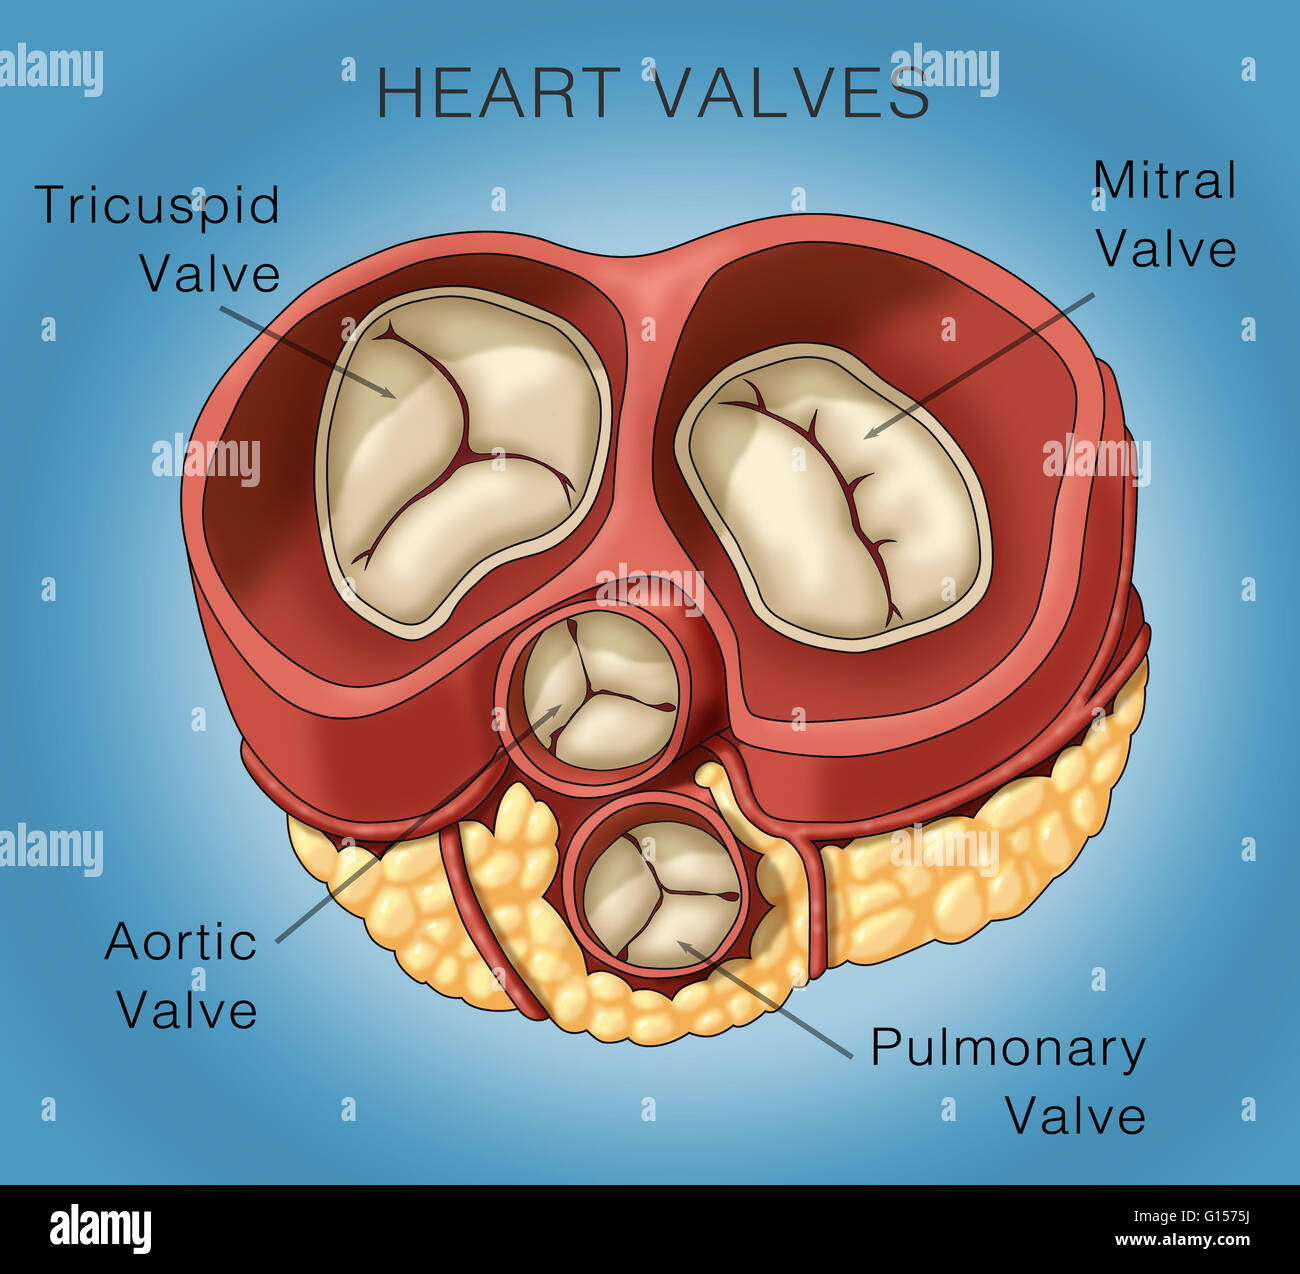 Anatomie De La Valve Cardiaque Humaine, Valve Pulmonaire Diastole, Valve  Aortique, Valve Tricuspide Et Valve Mitrale Clip Art Libres De Droits, Svg,  Vecteurs Et Illustration. Image 197874213